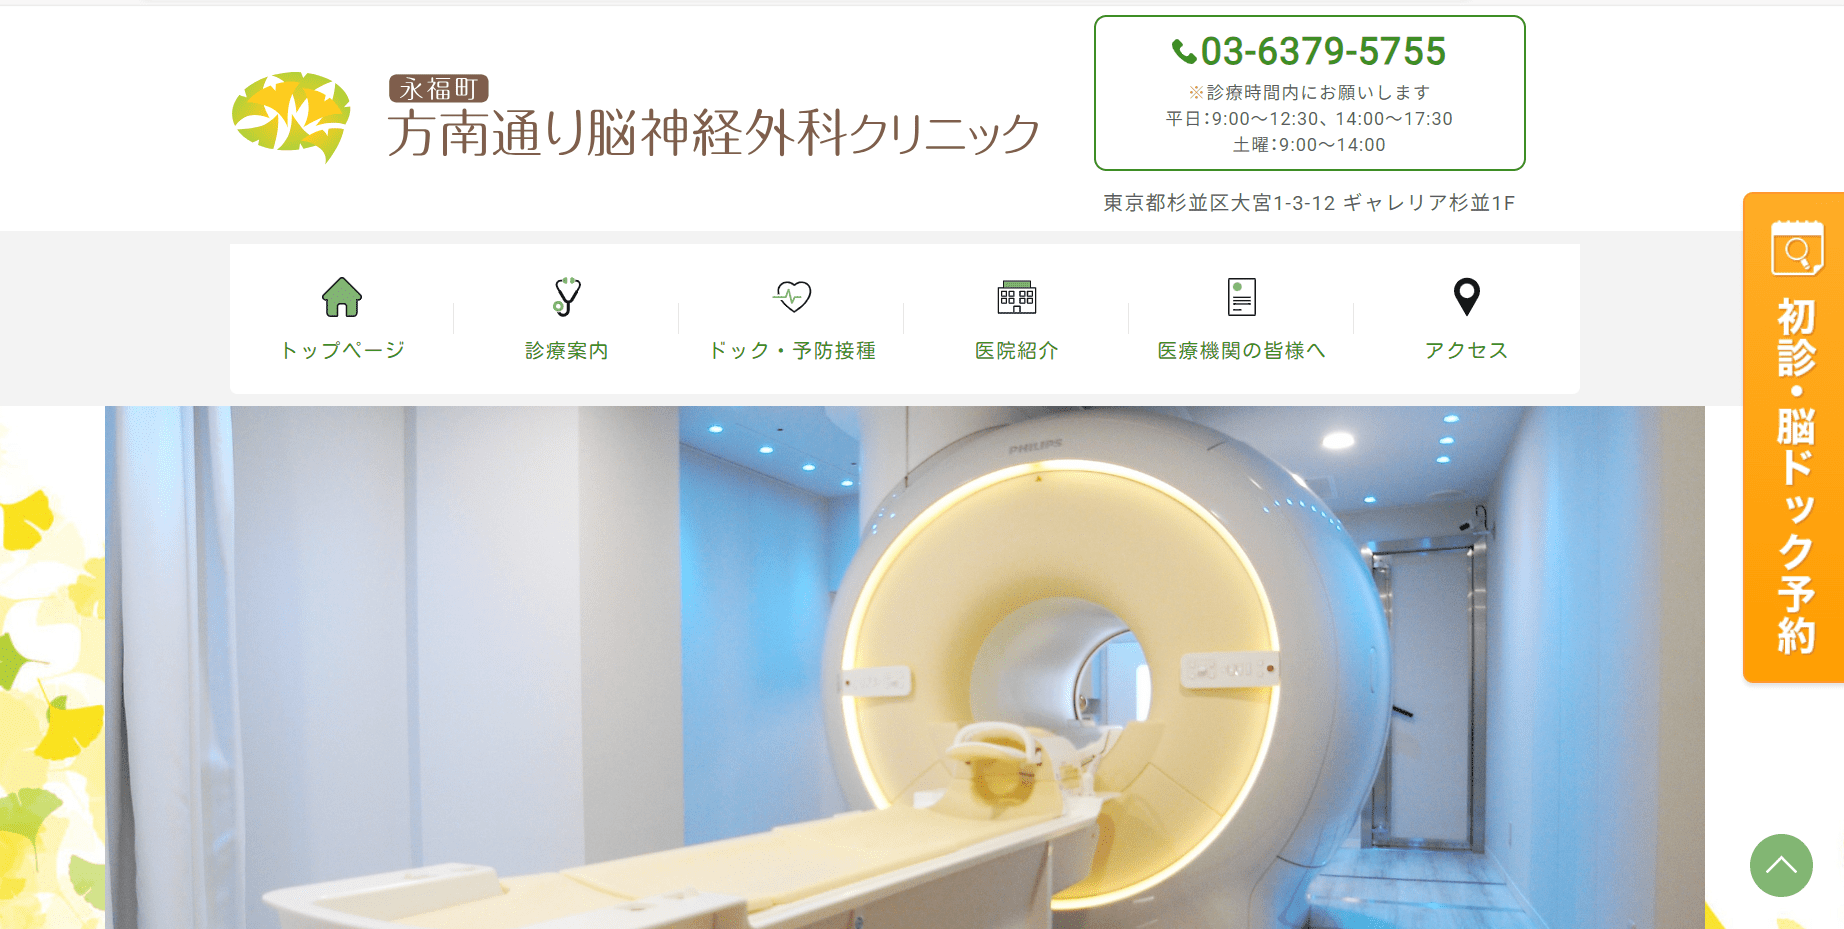 東京都で評判の脳神経外科におすすめのクリニック10選 方南通り脳神経外科クリニック